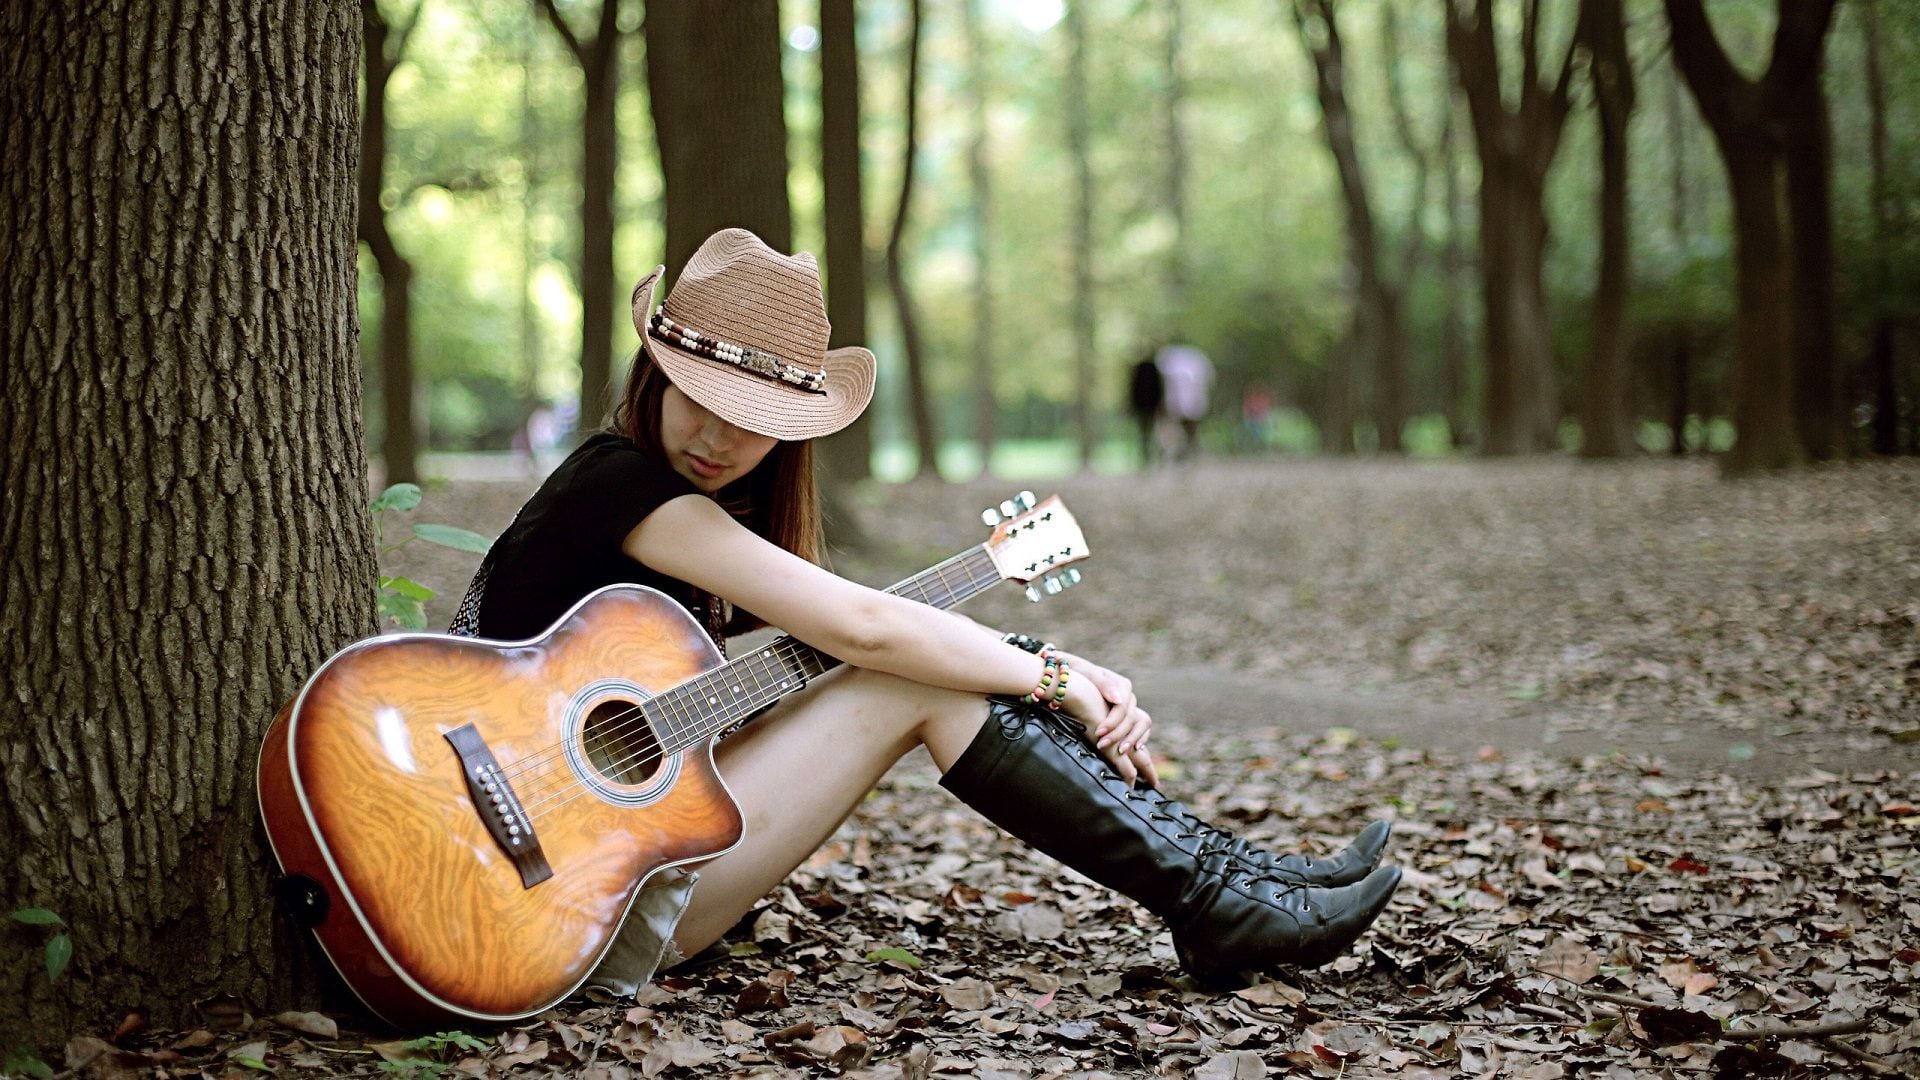 sfondo di una ragazza con la chitarra,chitarra,albero,musicista,strumento musicale,strumenti a corda pizzicati